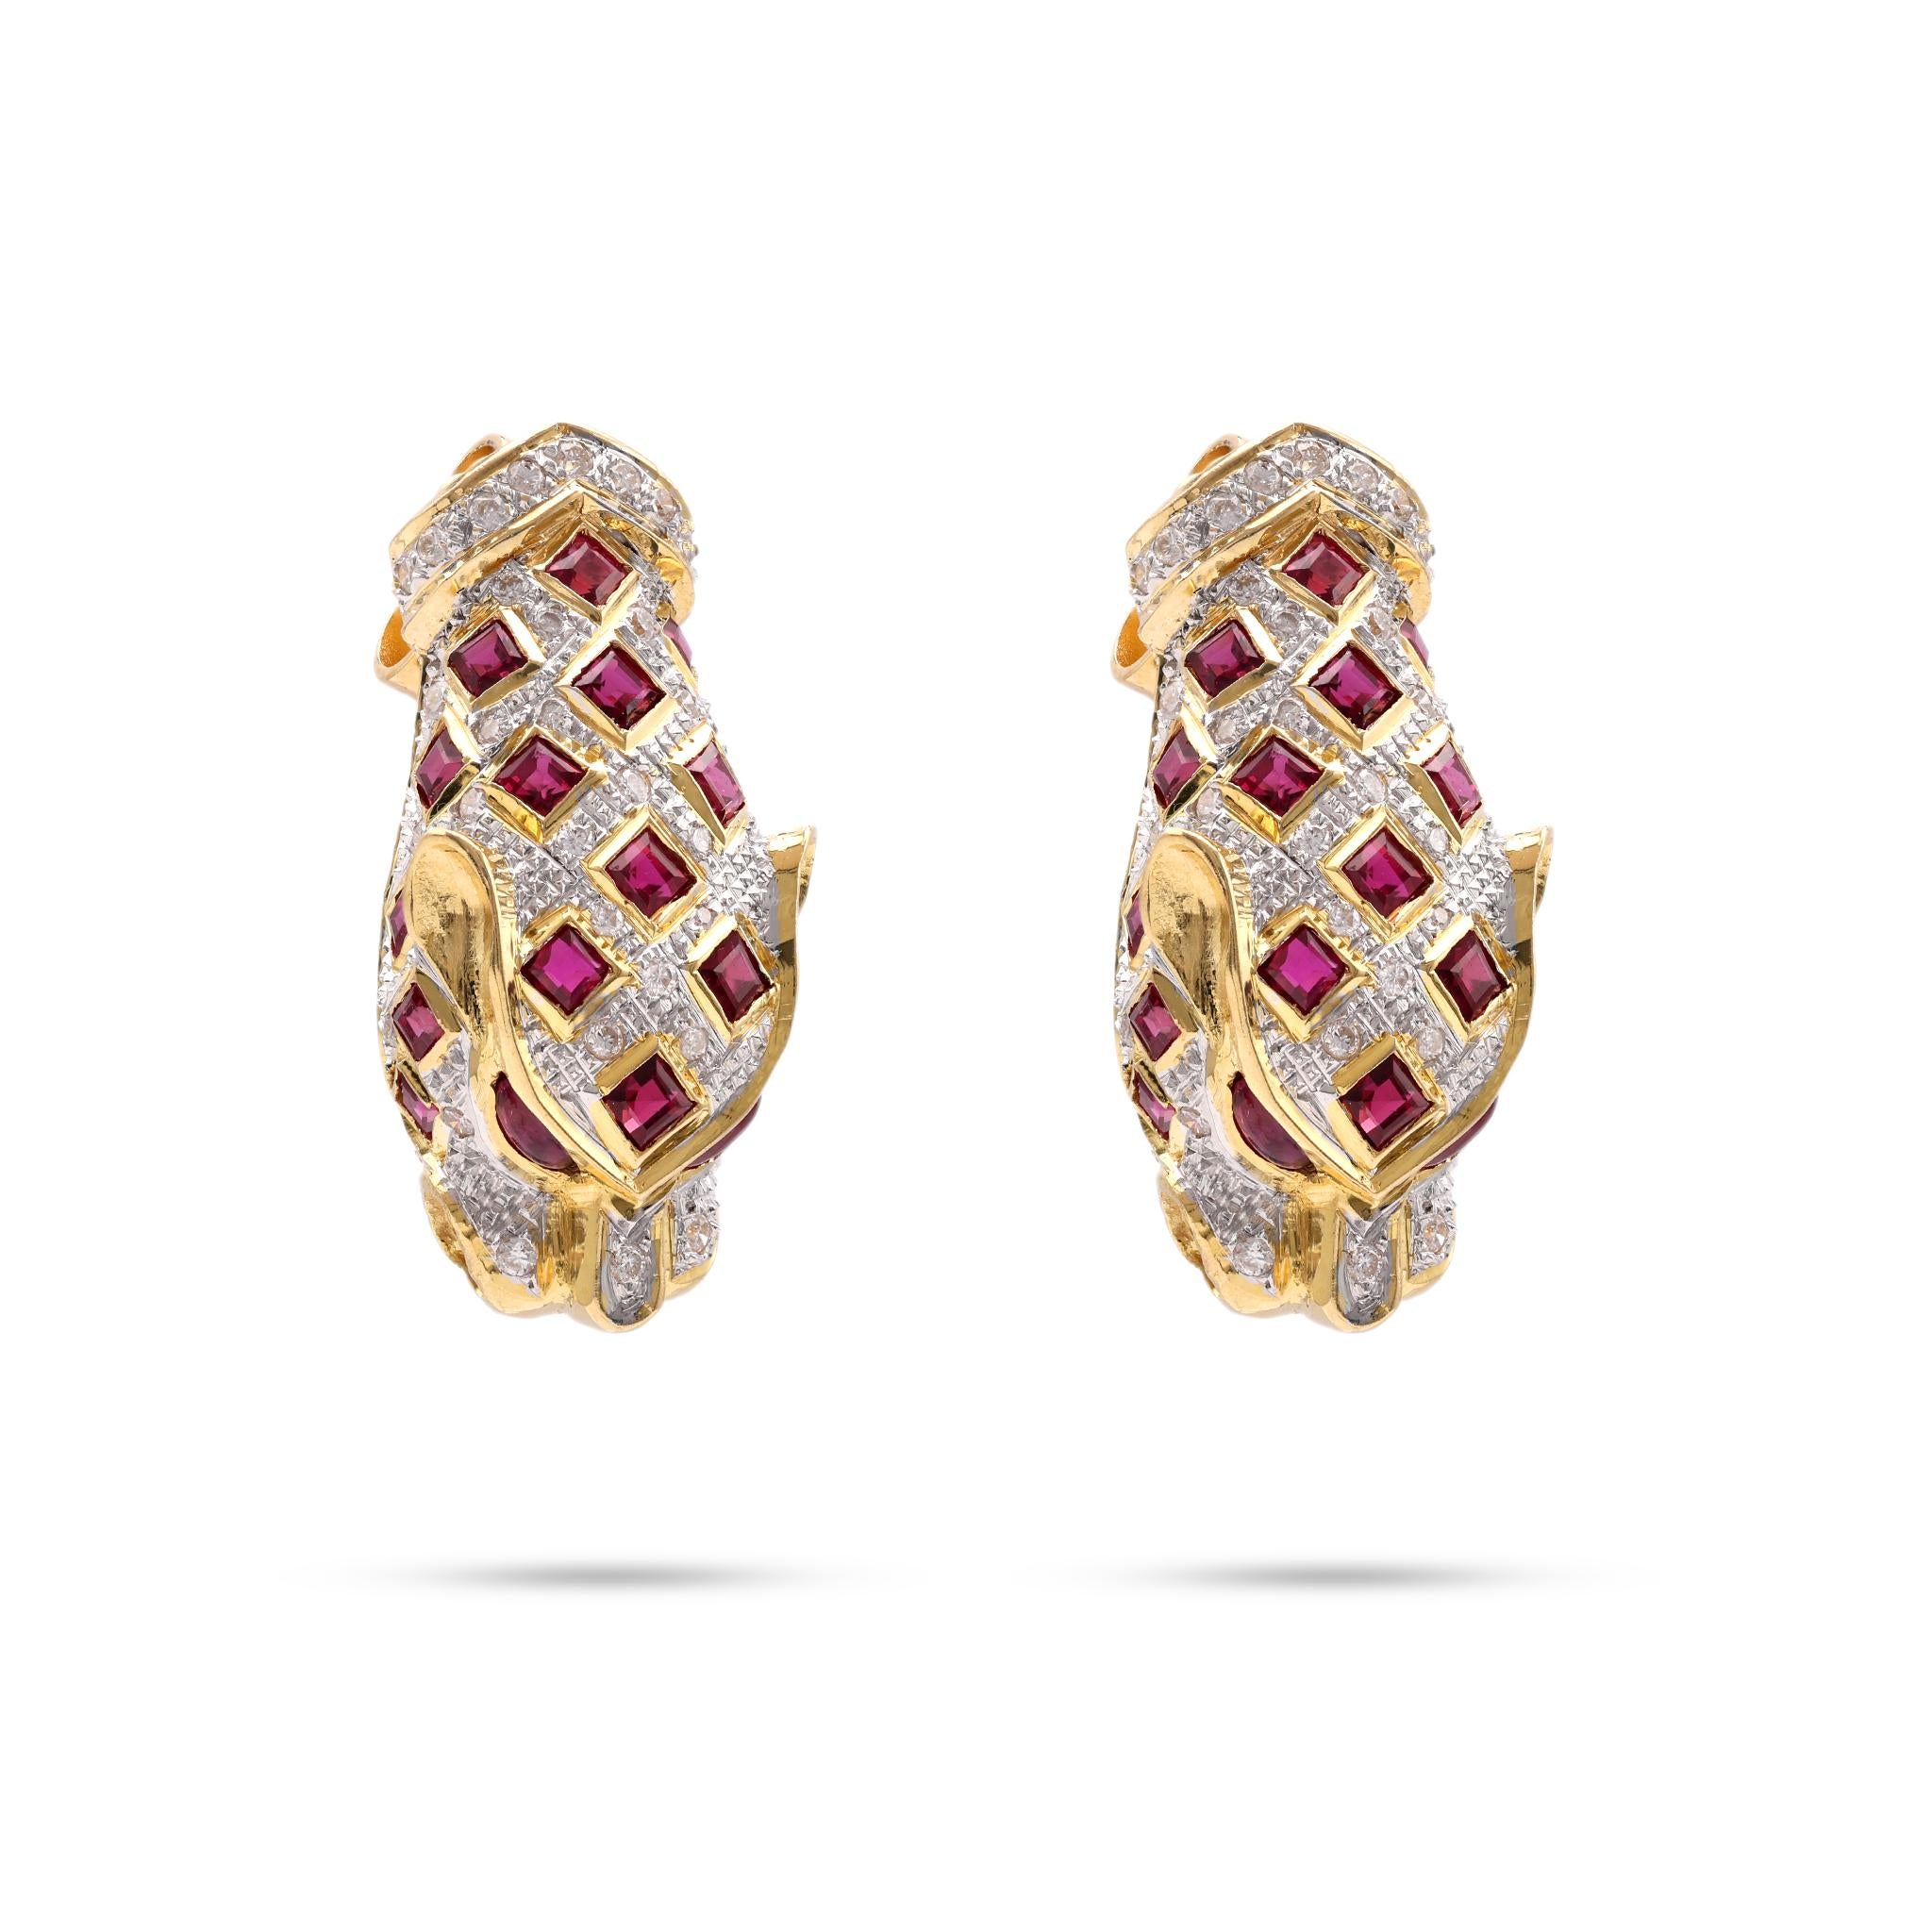 Pair of Vintage Diamond Ruby 18k Yellow Gold Cheetah Earrings